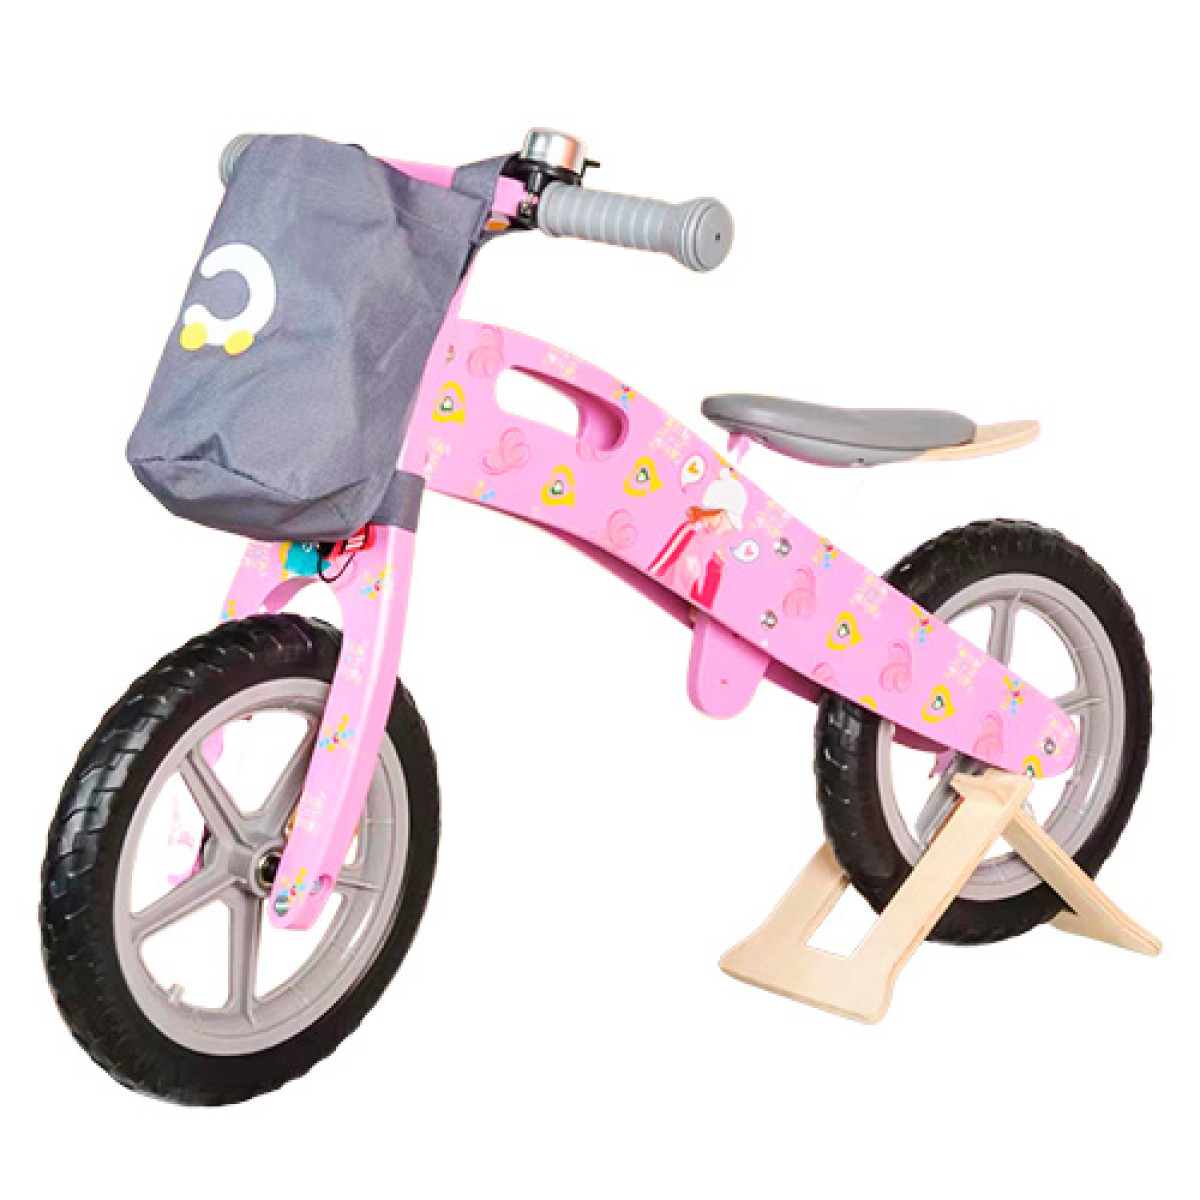 Bicicleta Infantil sin Pedales de Madera - ROSA 